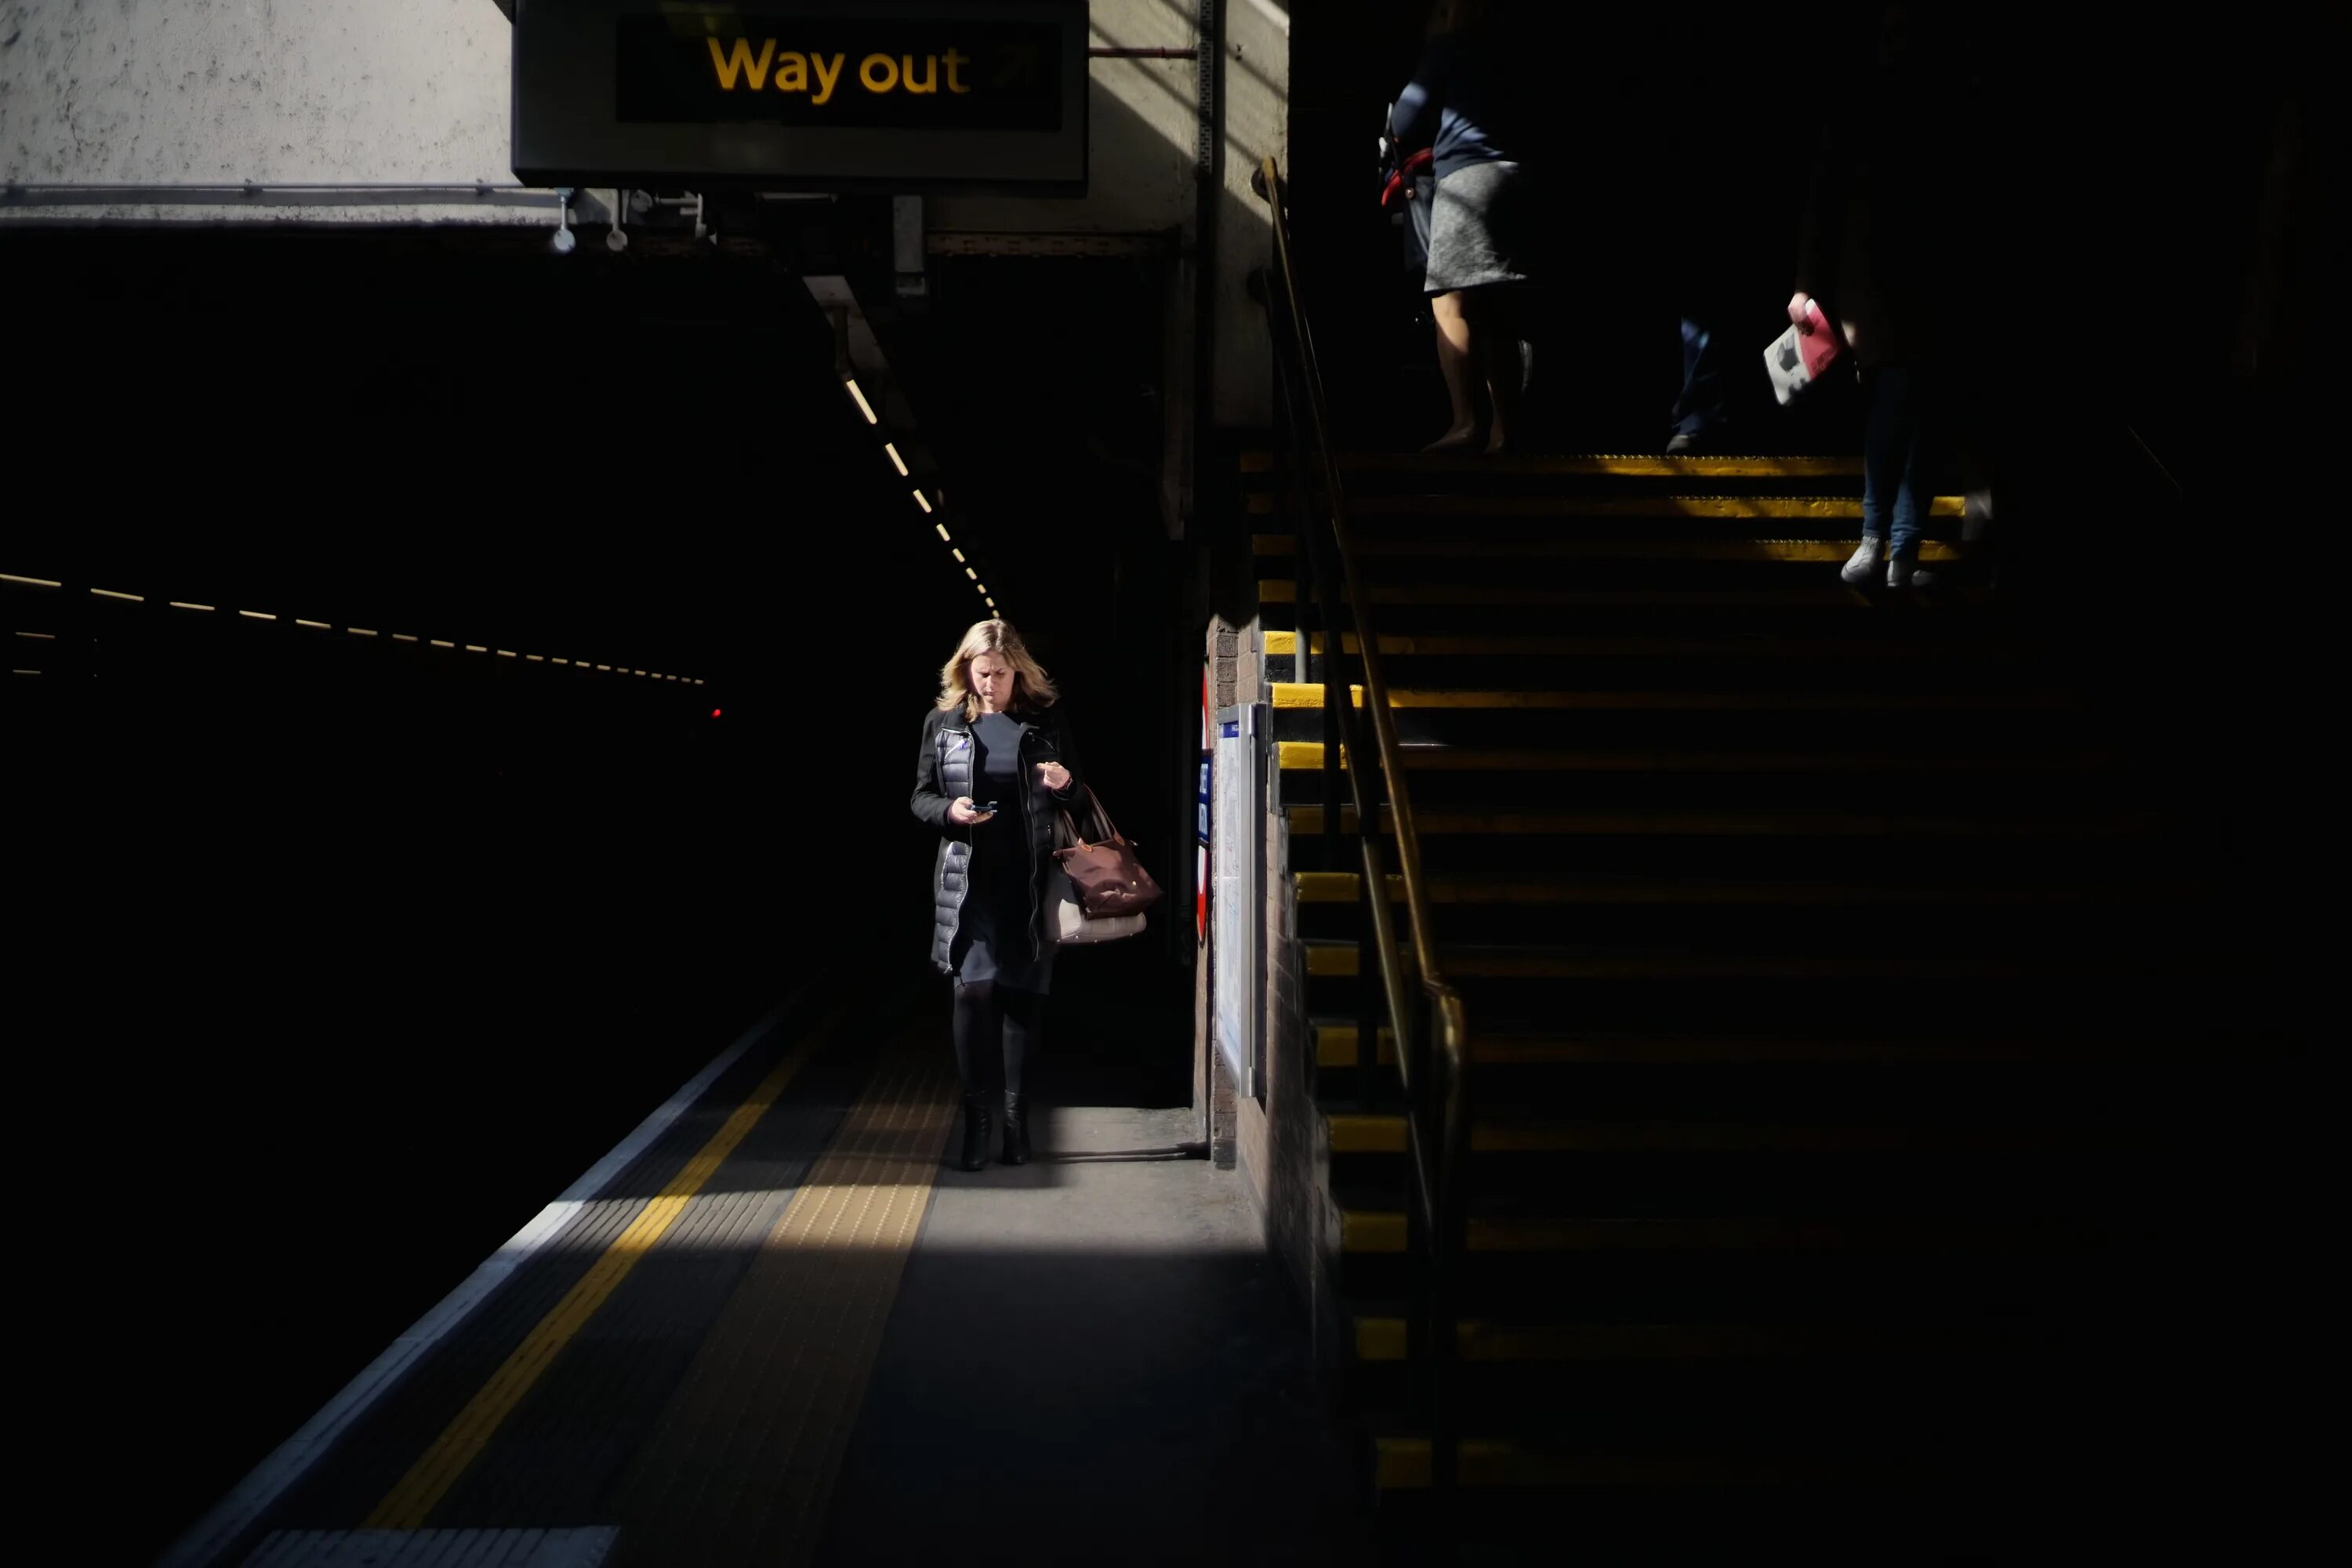 Свет или тьма выхода нет нужен ответ. Ночное метро лестница. Ночная лестница метро. Лондон андеграунд. Ступеньки метро зимой ночью.